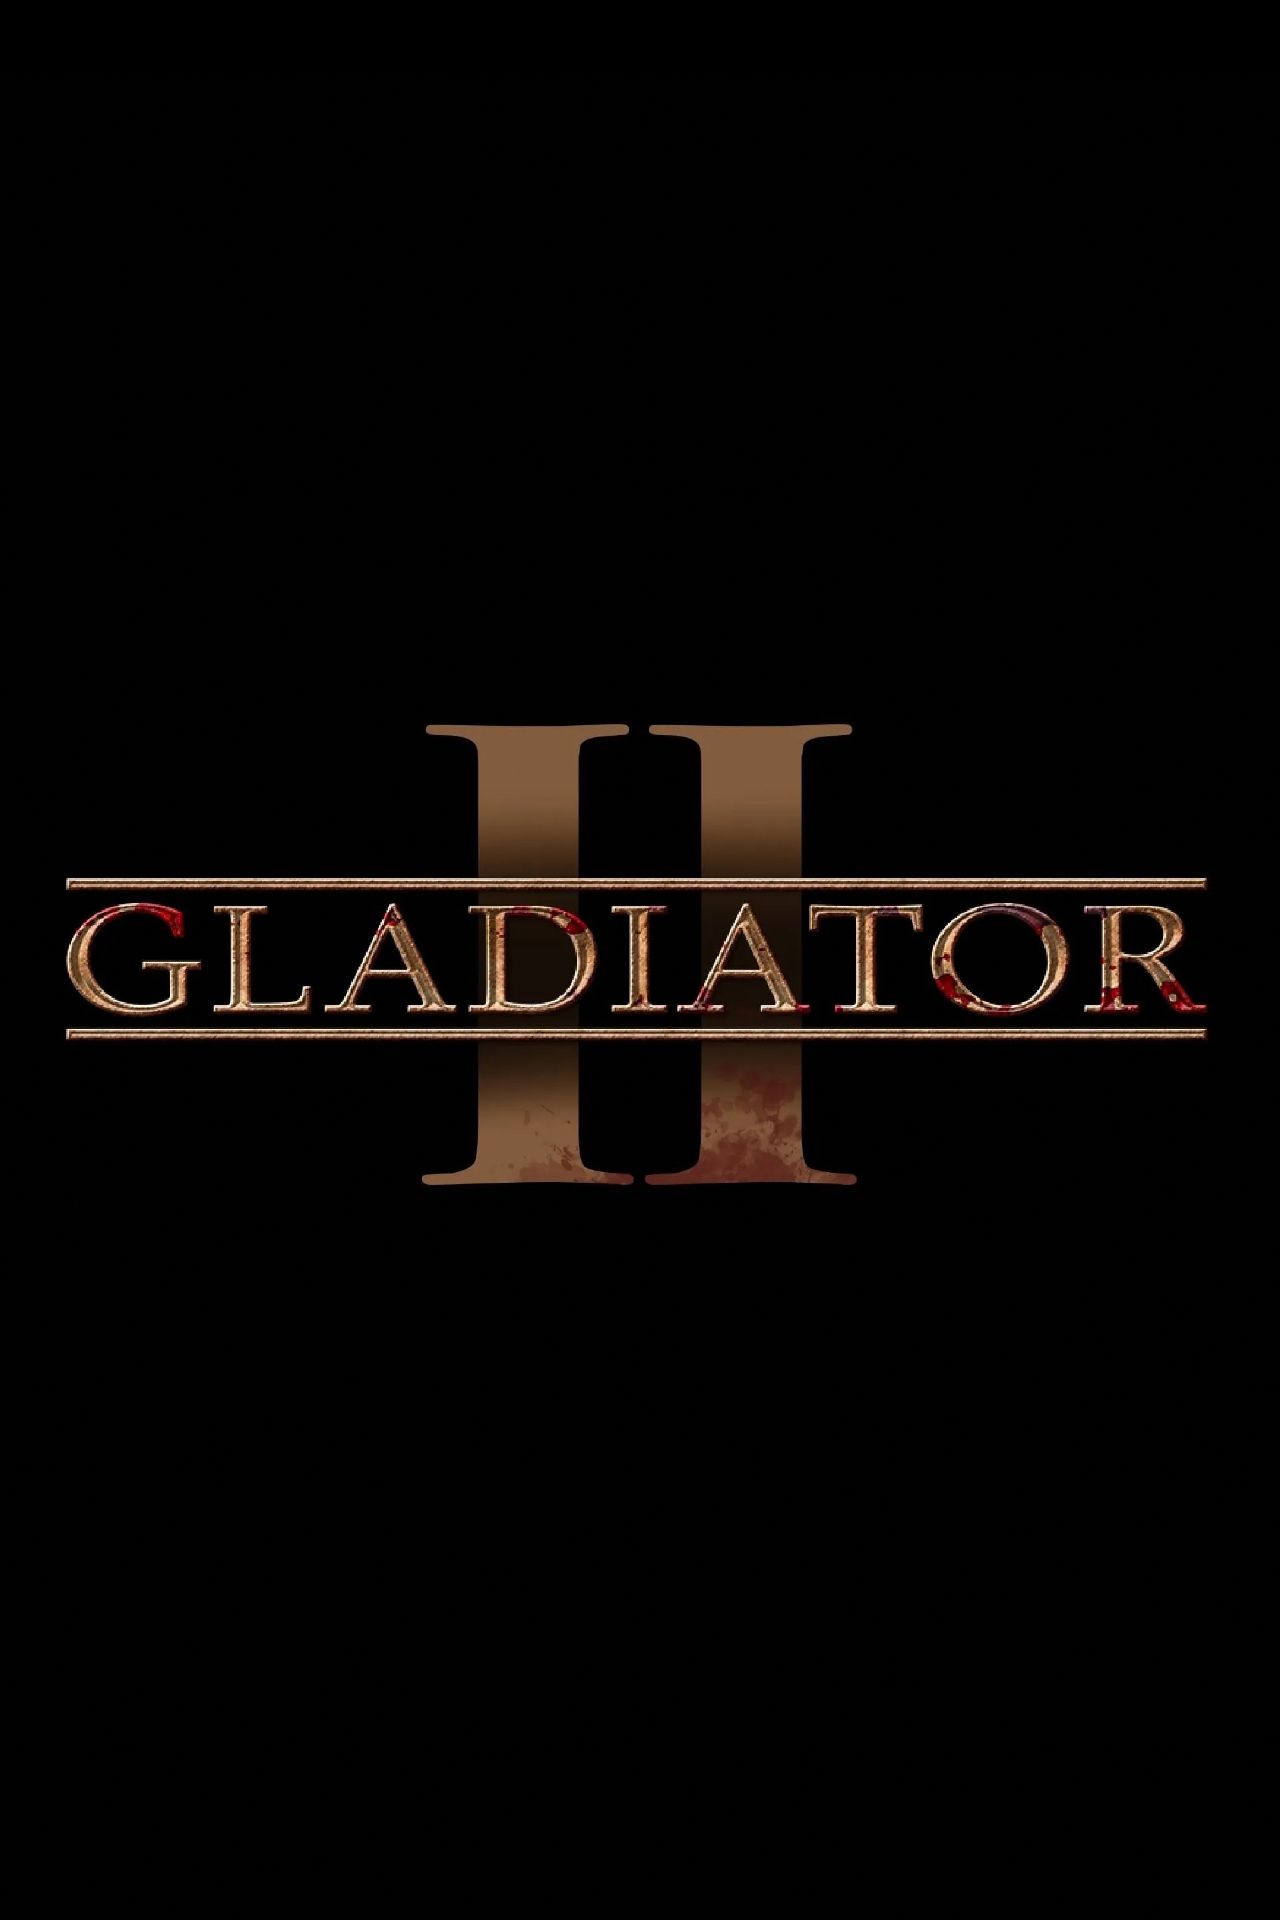 Logotipo de la película temporal Gladiator 2